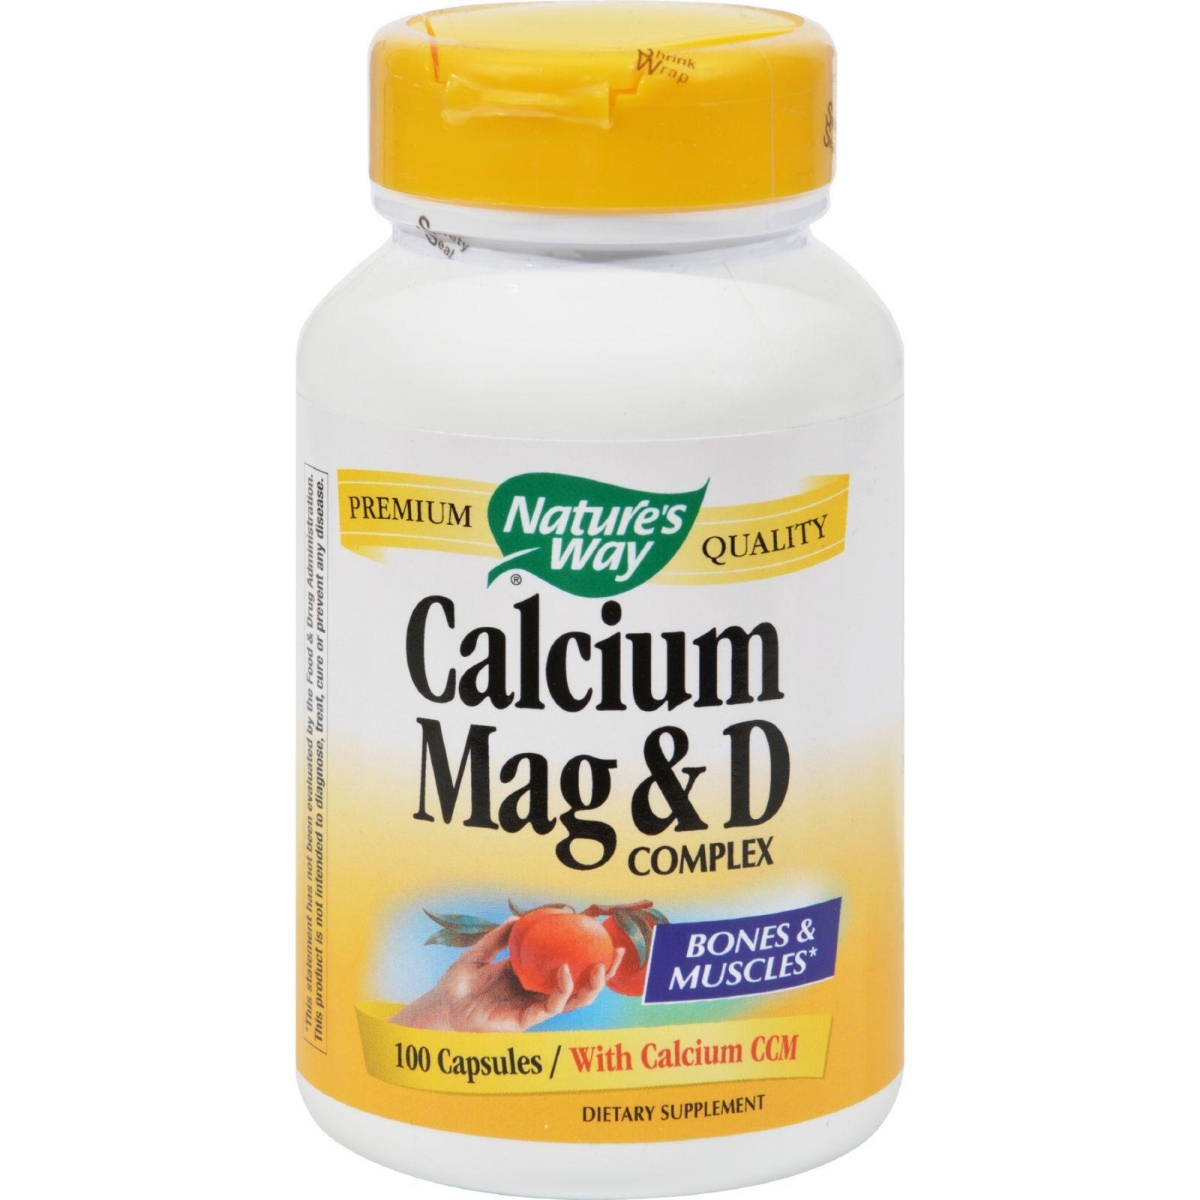 Hg0817064 Calcium Magnesium & D Complex - 100 Capsules